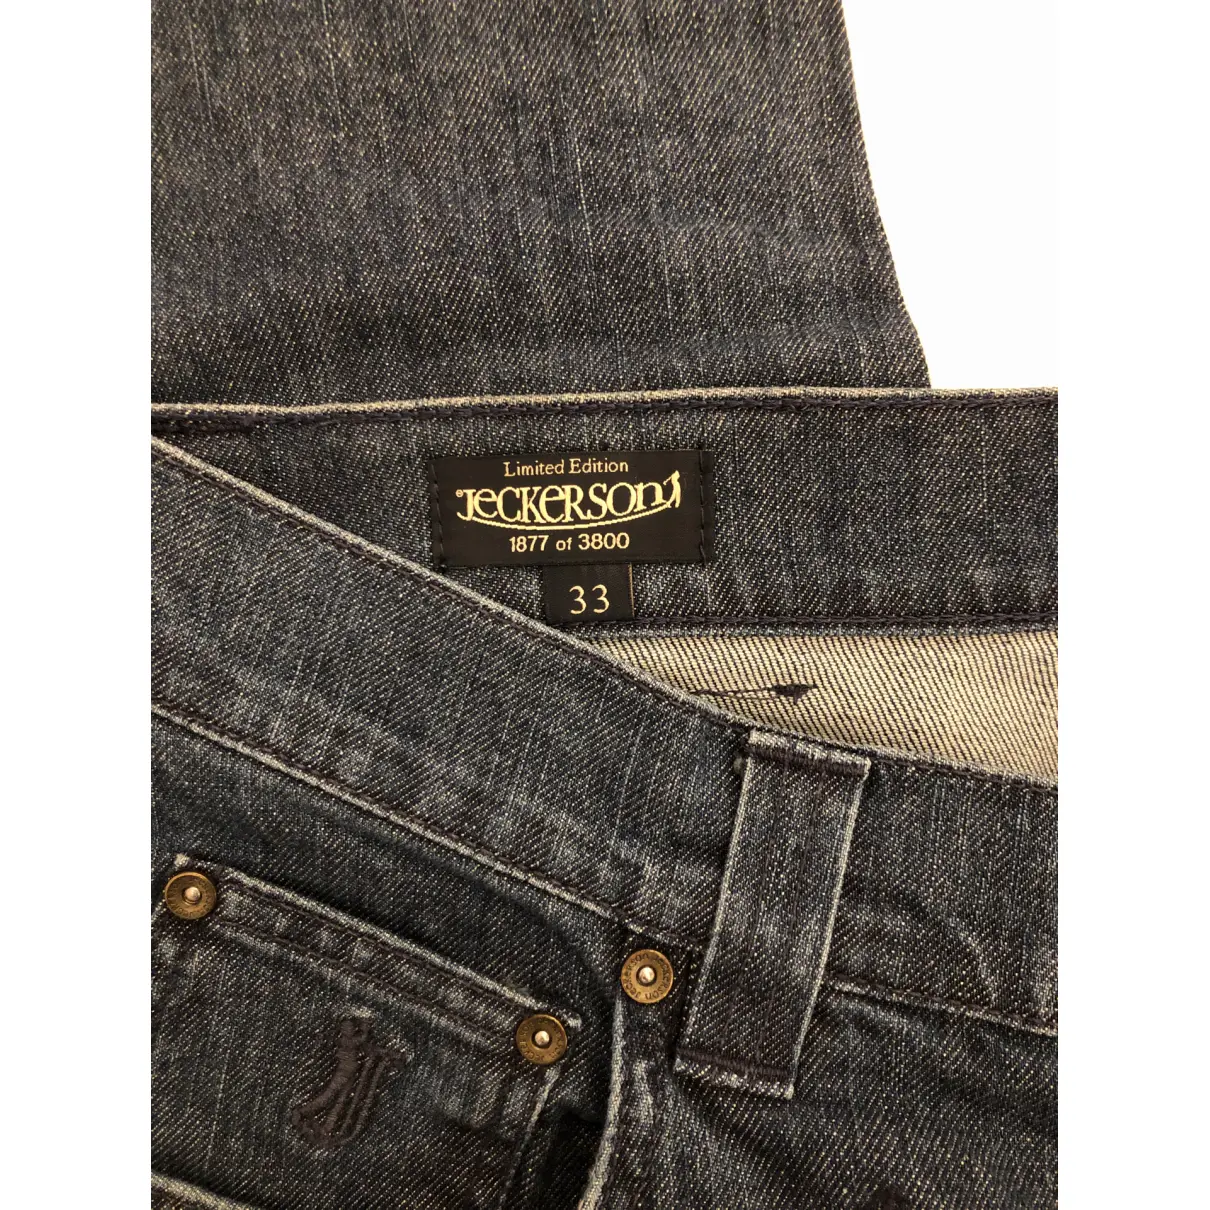 Luxury Jeckerson Jeans Men